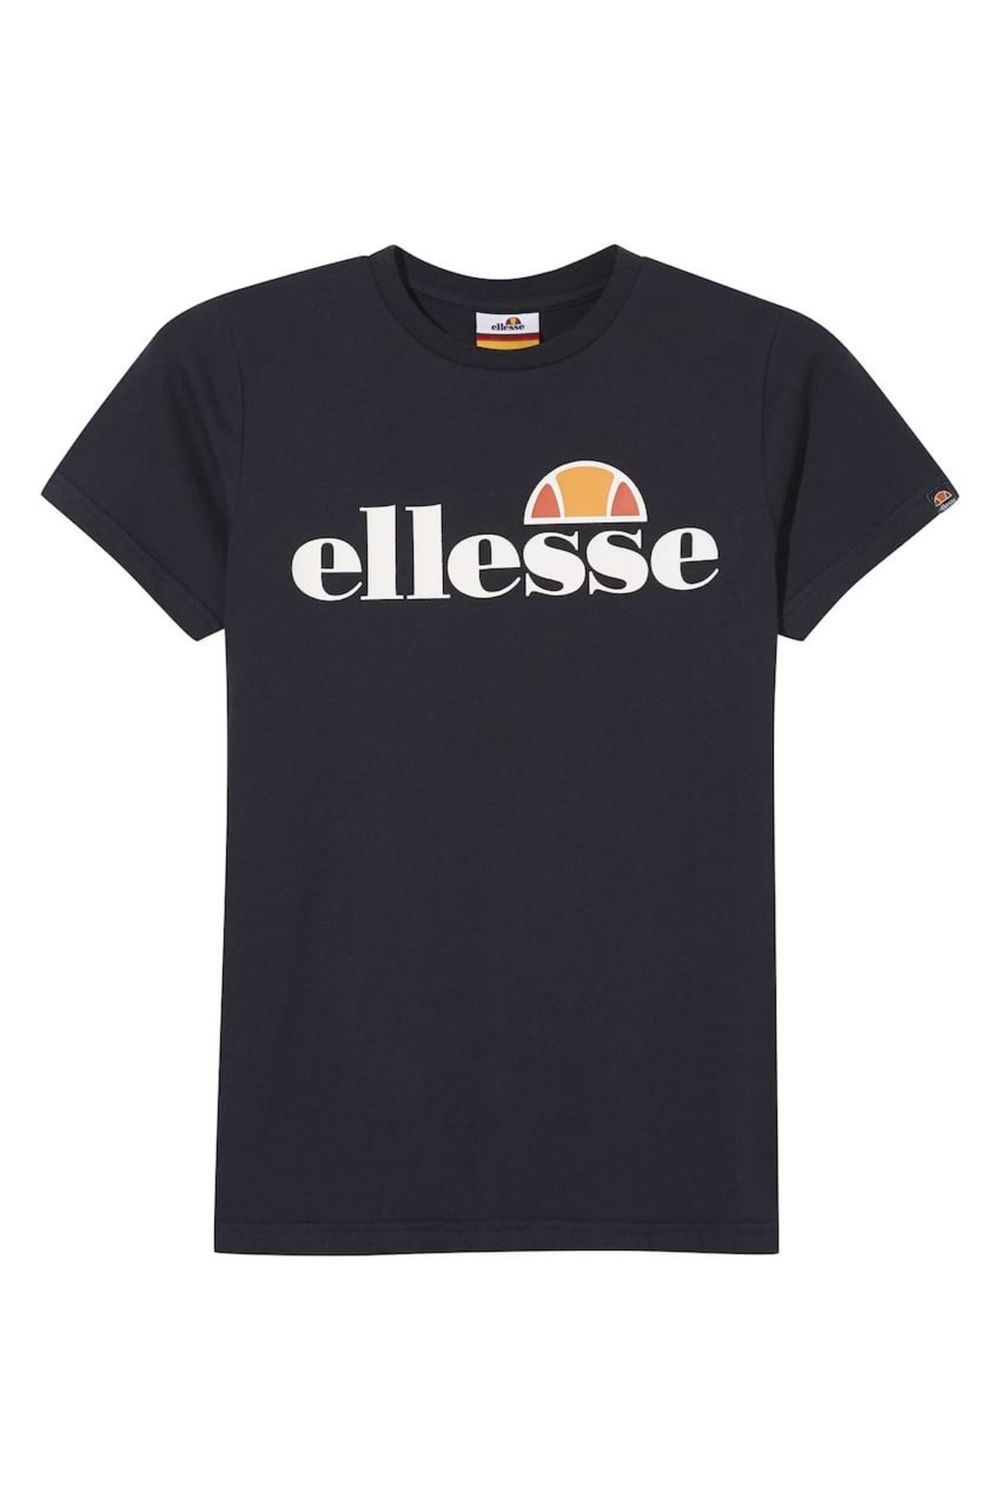 Ellesse Jungen - MALIA Junior, T-Shirt - Trendyol kurzarm, Rundhals, Logo-Print Tee